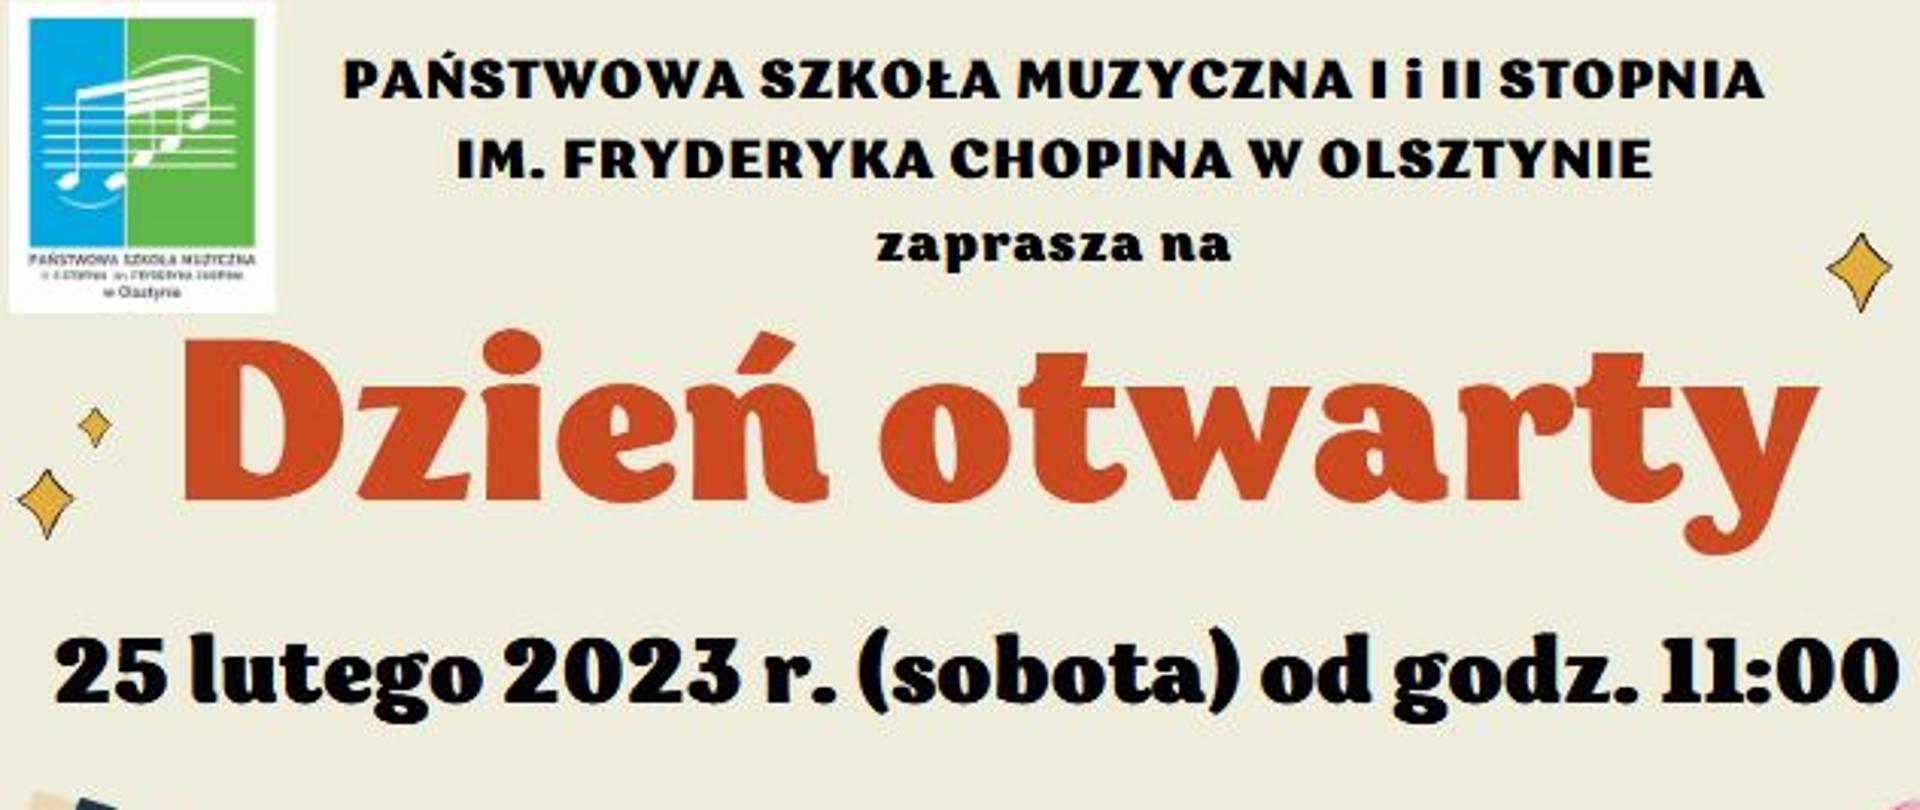 Zaproszenie na dzień otwarty PSM w Olsztynie. Wśród instrumentów muzycznych zamieszczona jeszt szczegółowa agenda dnia 